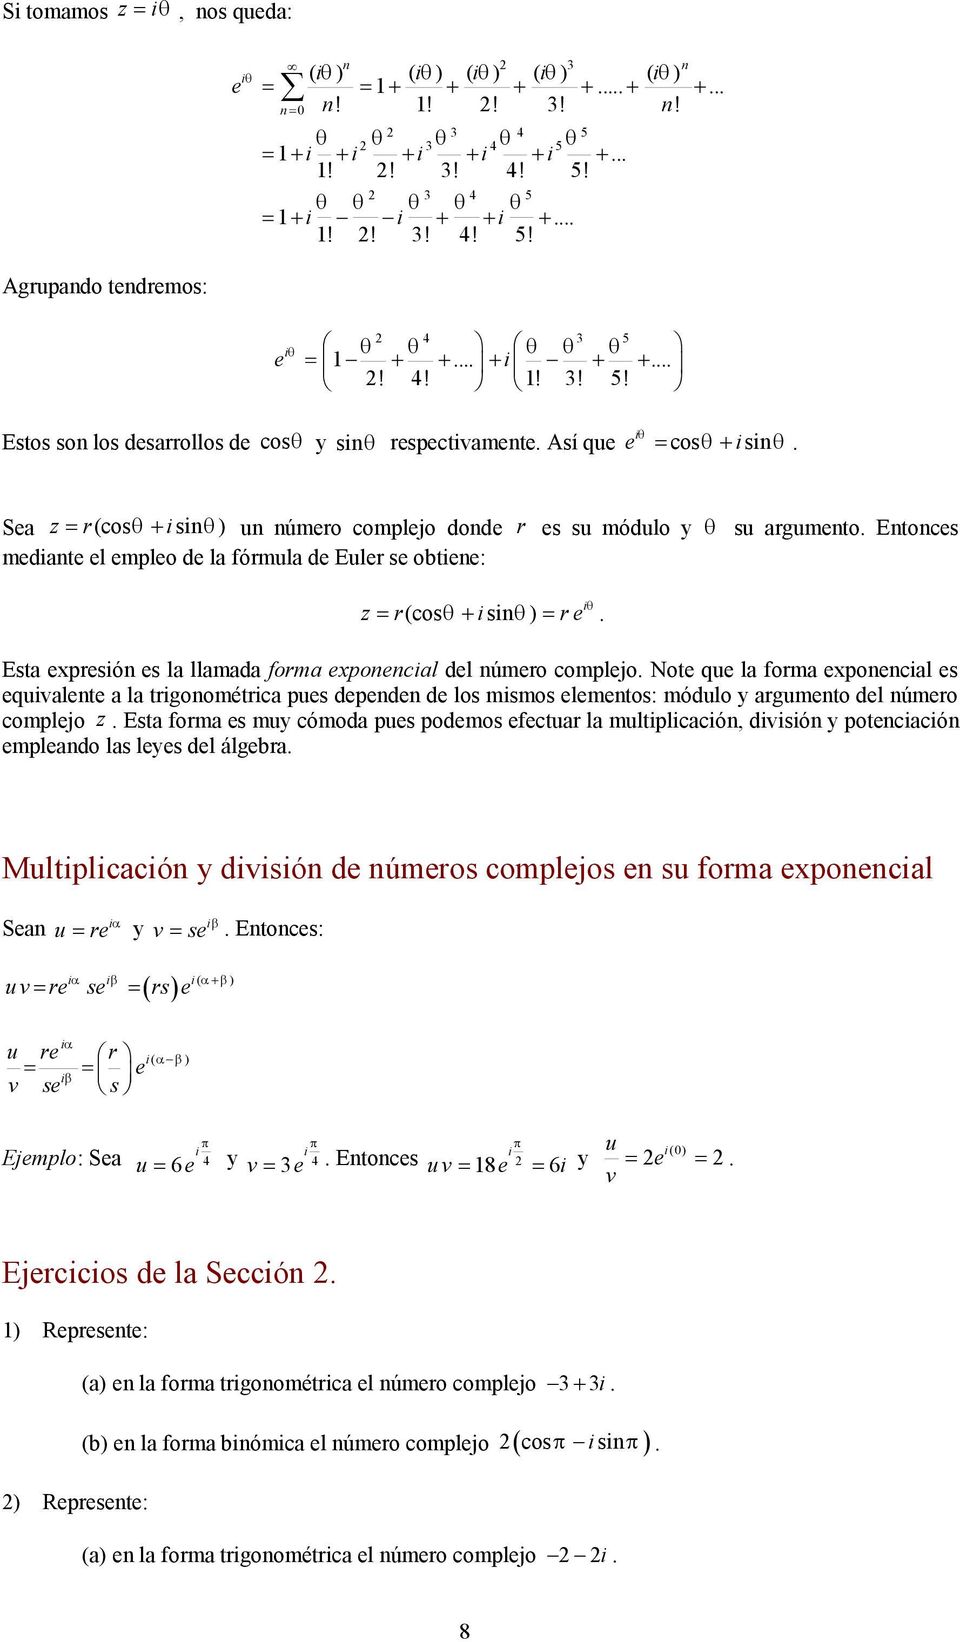 ø q Estos so los desarrollos de cosq y sq respectvamete Así que e = cosq + sq Sea z = r(cosq + s q u úmero complejo dode r es su módulo y q su argumeto Etoces medate el empleo de la fórmula de Euler